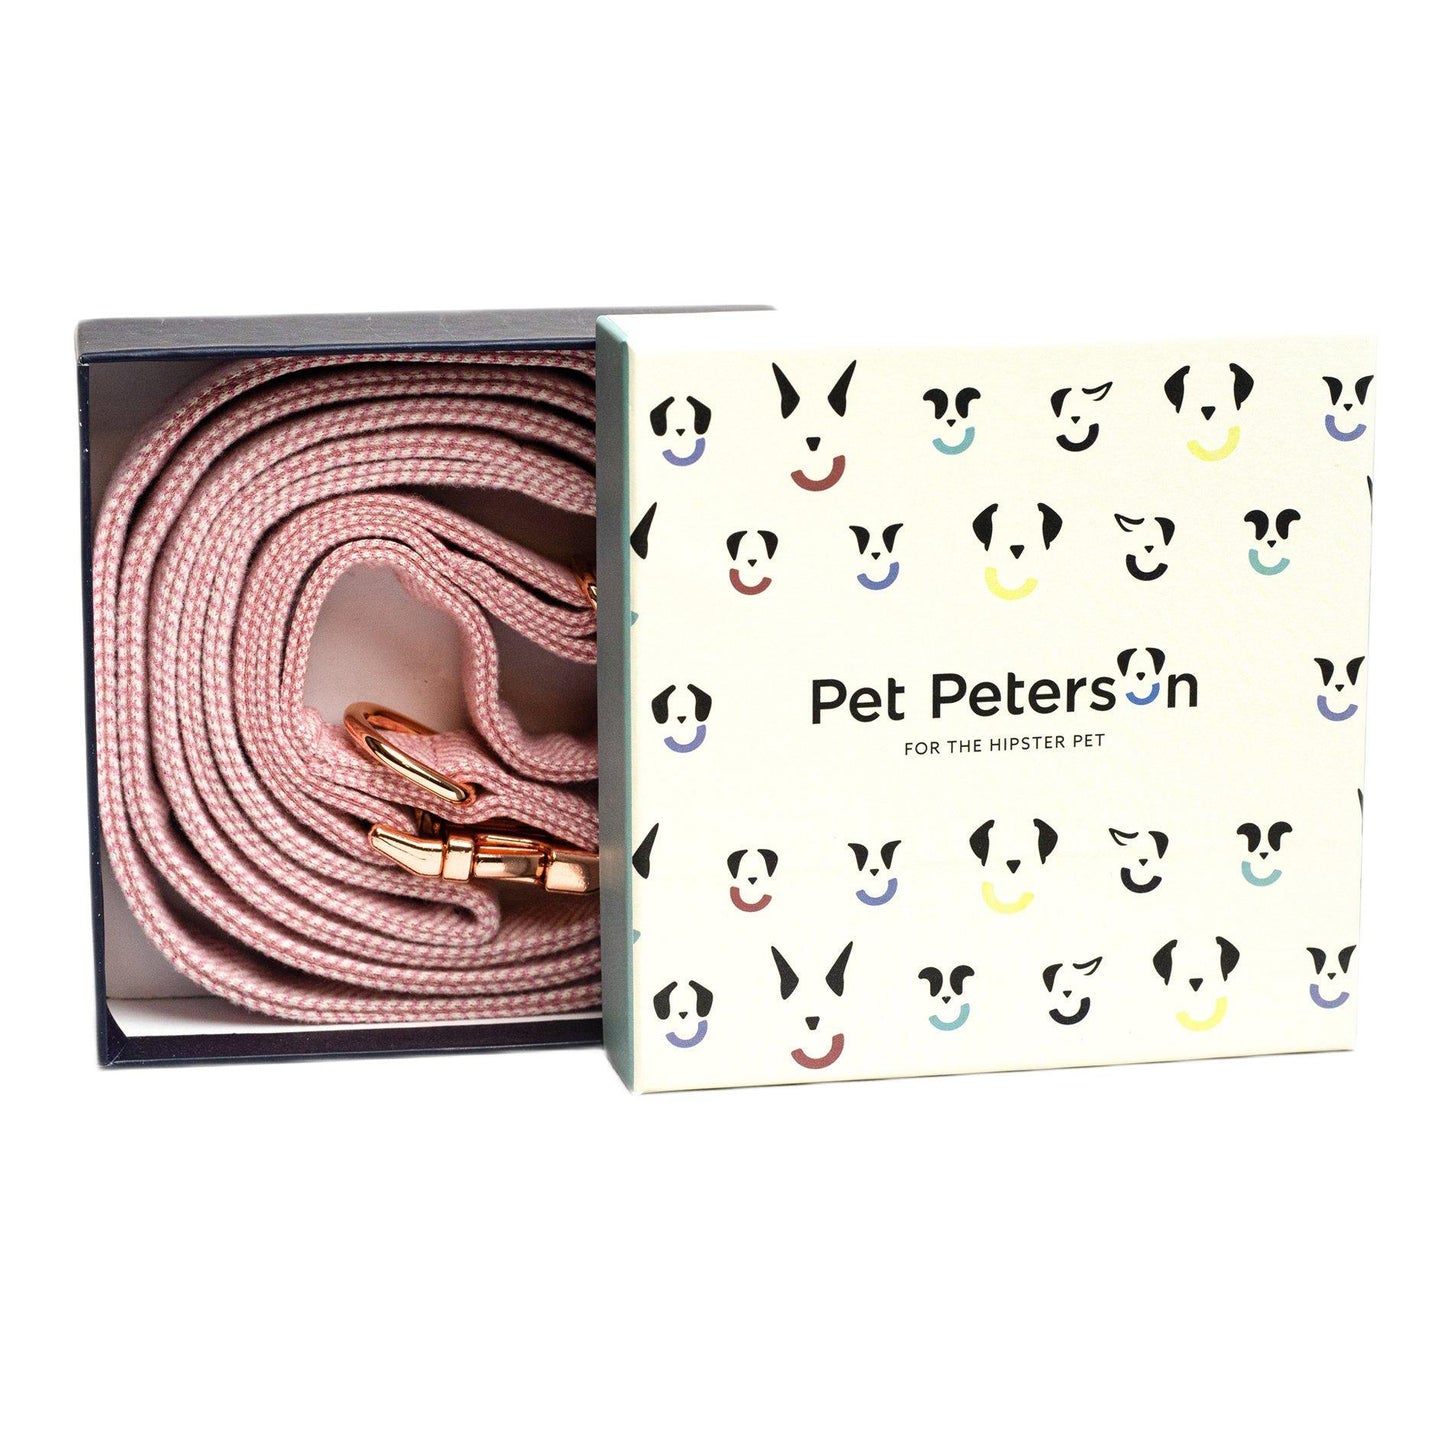 Pet Peterson set - Paris - Tienda online collares y accesorios de diseño para perros Dog Models - Pet Peterson